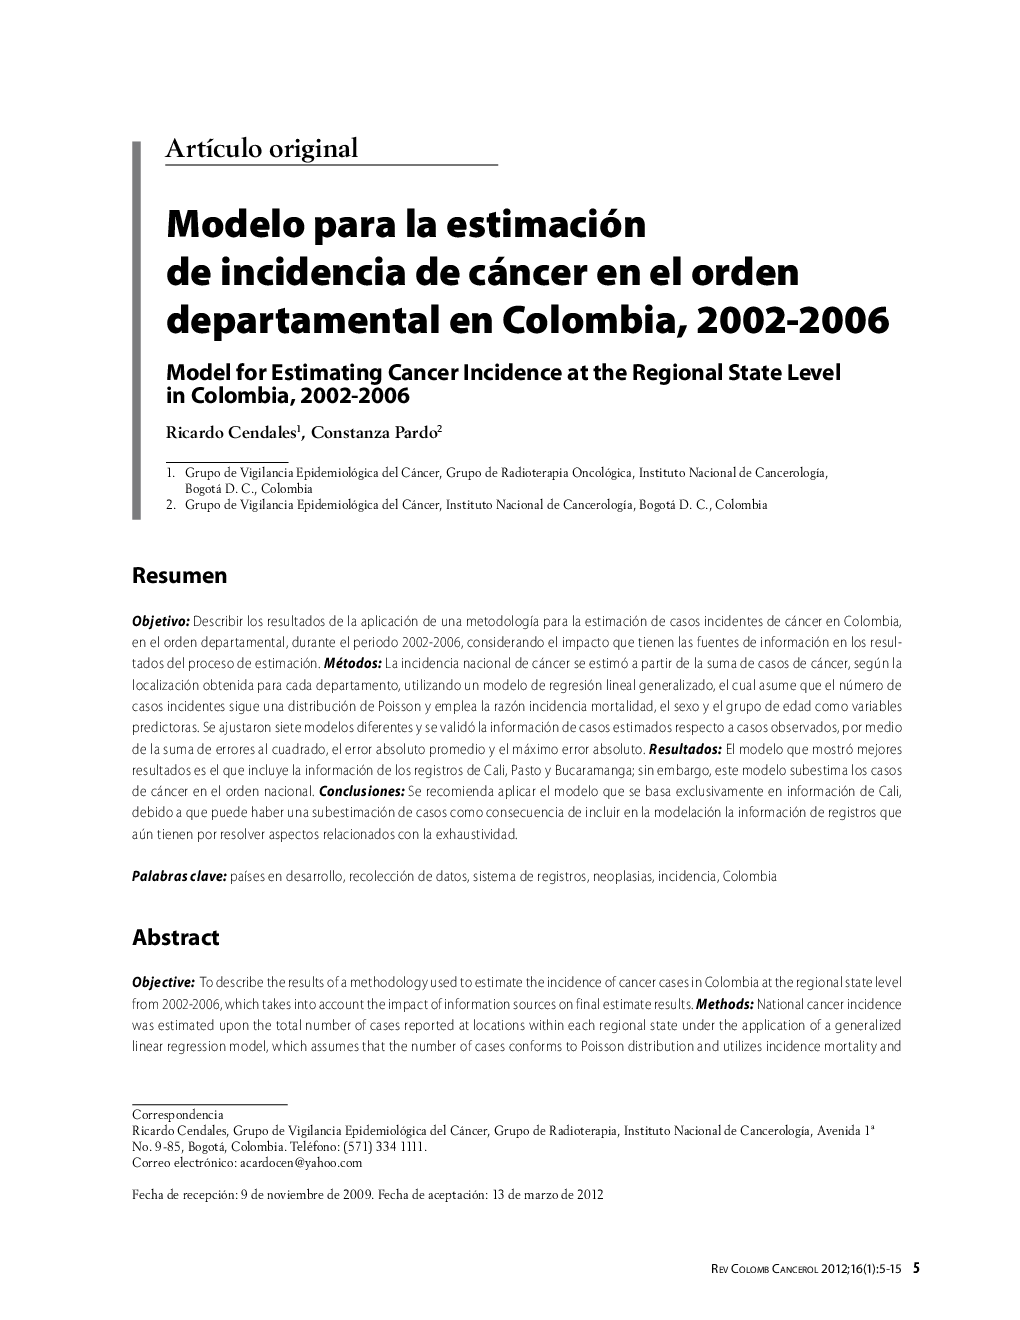 Modelo para la estimación de incidencia de cáncer en el orden departamental en Colombia, 2002-2006Model for Estimating Cancer Incidence at the Regional State Level in Colombia, 2002-2006